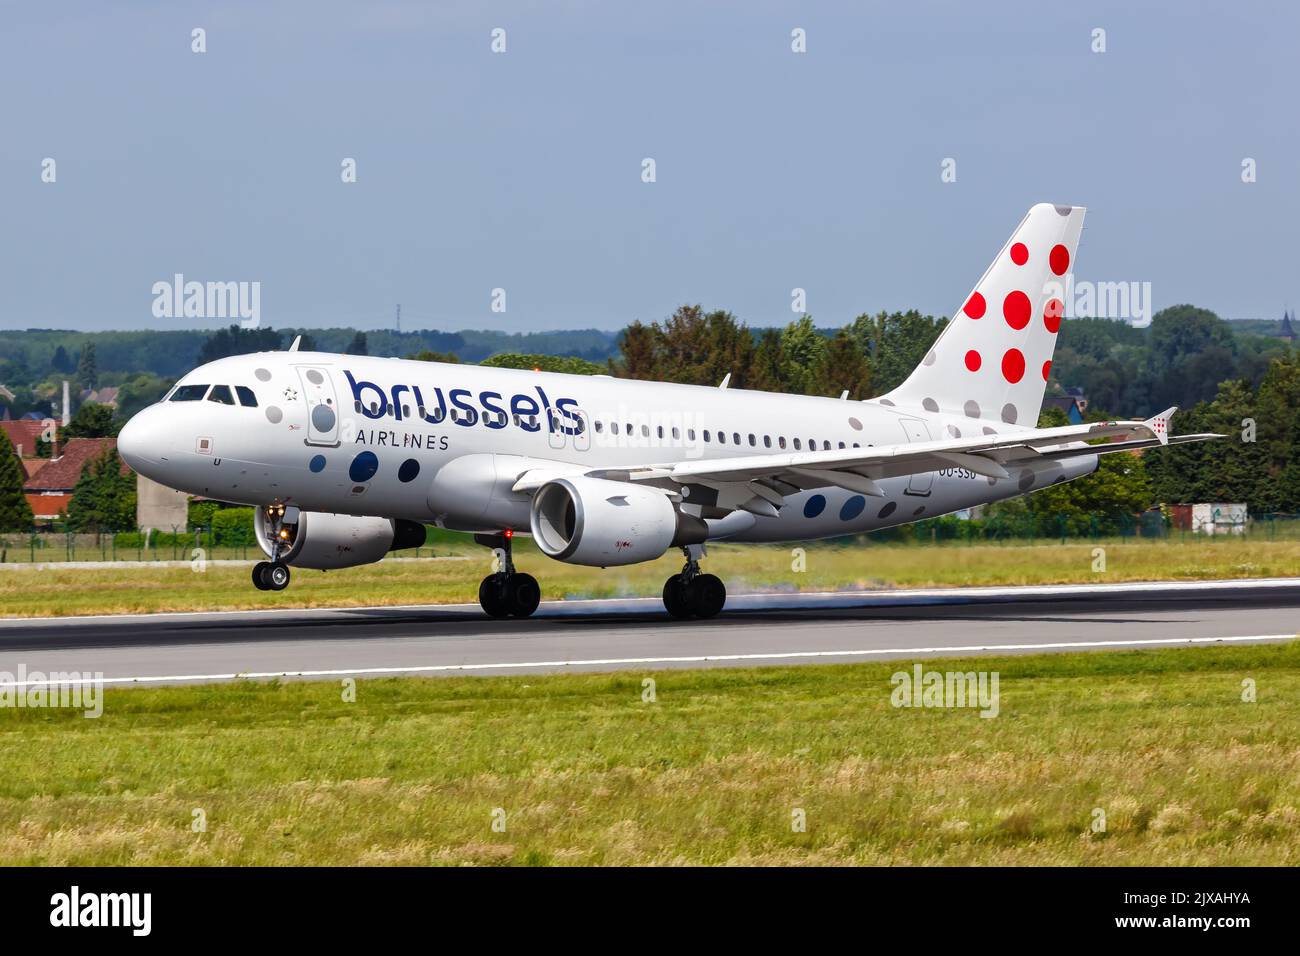 Bruselas, Bélgica - 21 de mayo de 2022: Avión Airbus A319 de Brussels Airlines en el aeropuerto de Bruselas (BRU) en Bélgica. Foto de stock